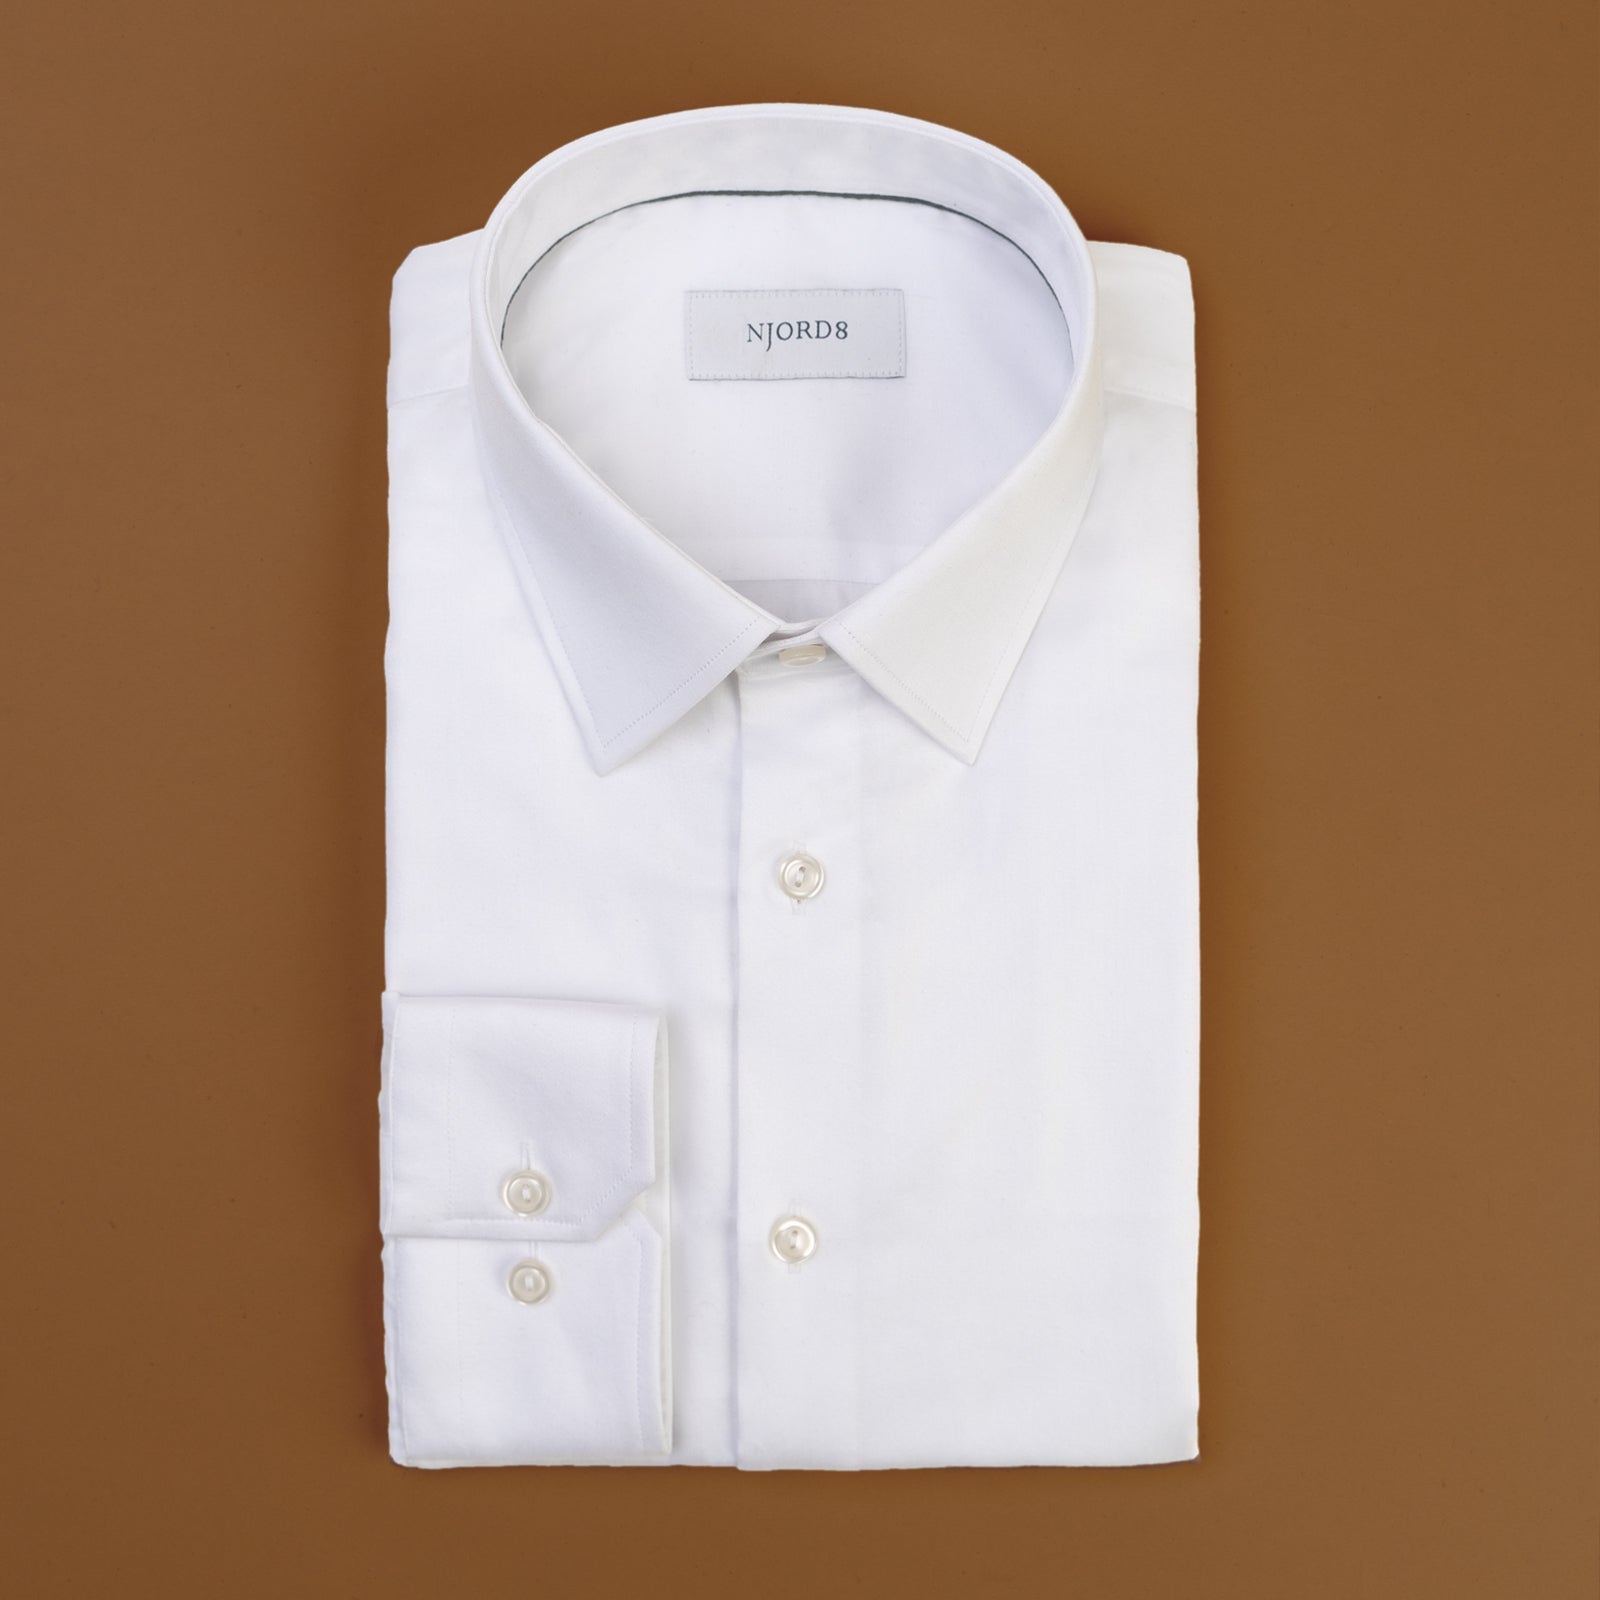 accent åbenbaring aflevere NJORD8 skjorten - klassisk design og top kvalitet